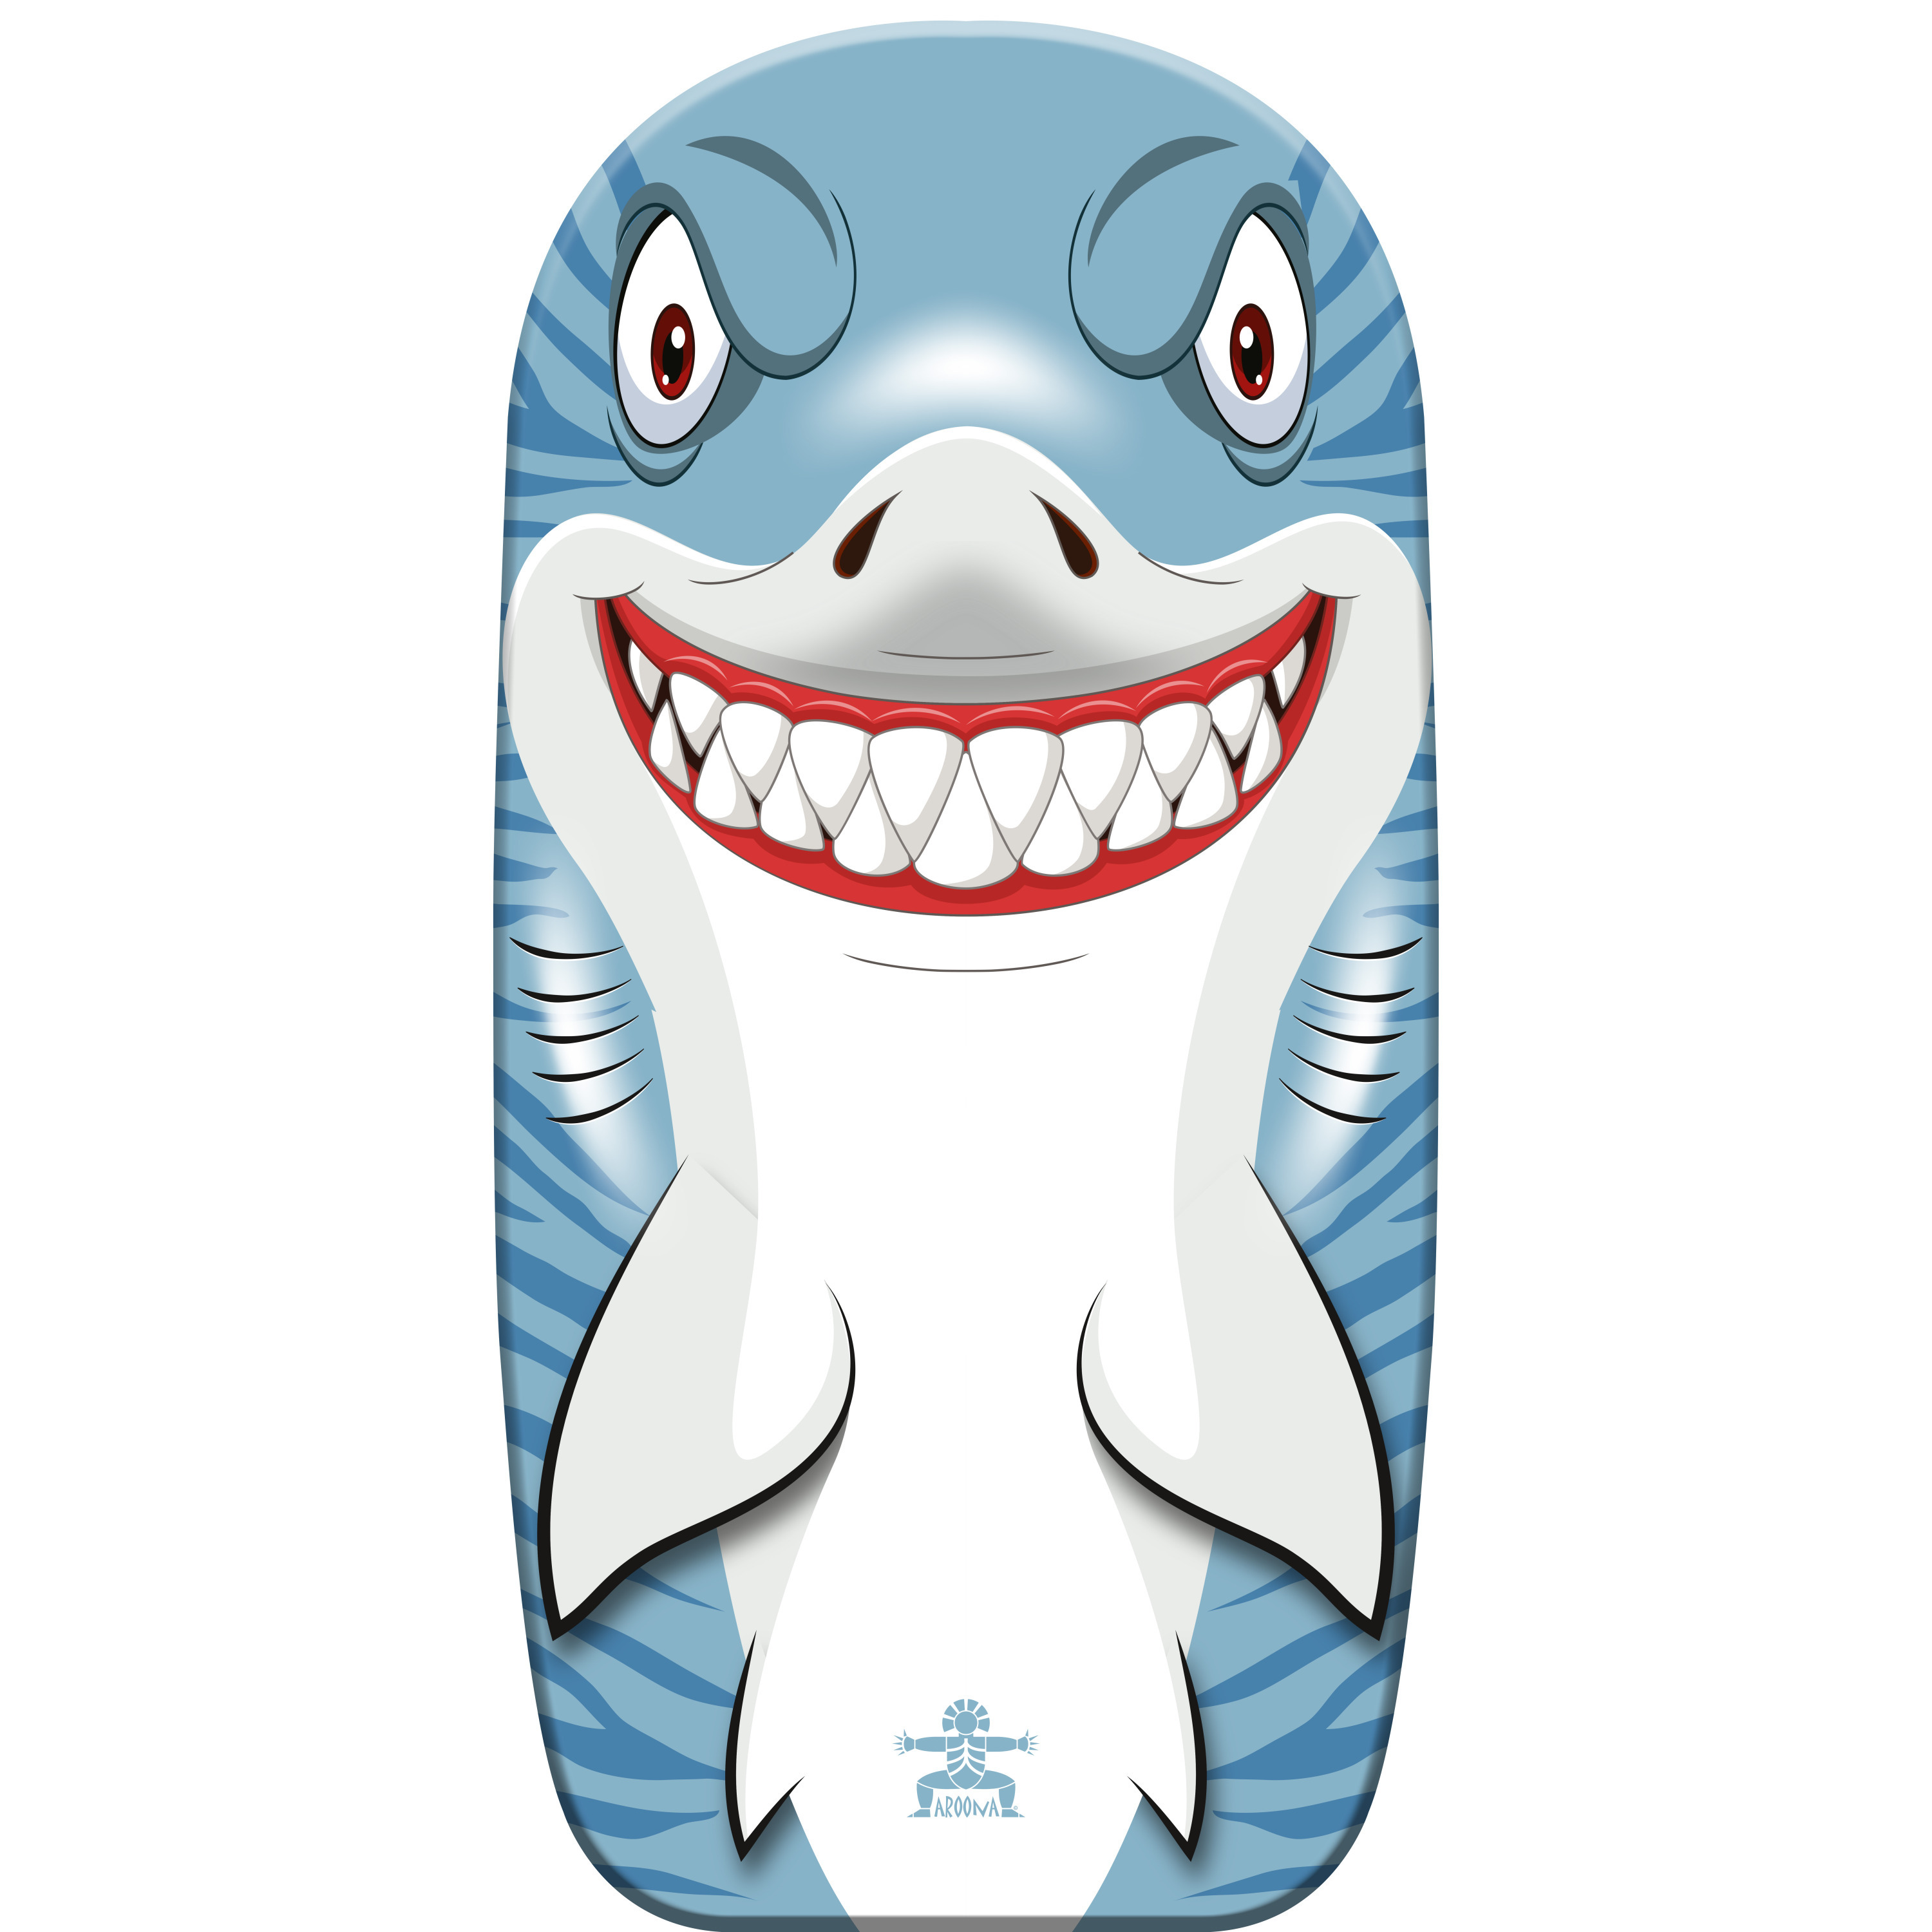 Gebro Bodyboard haai - kunststof - lichtblauw/wit - 82 x 46 cm